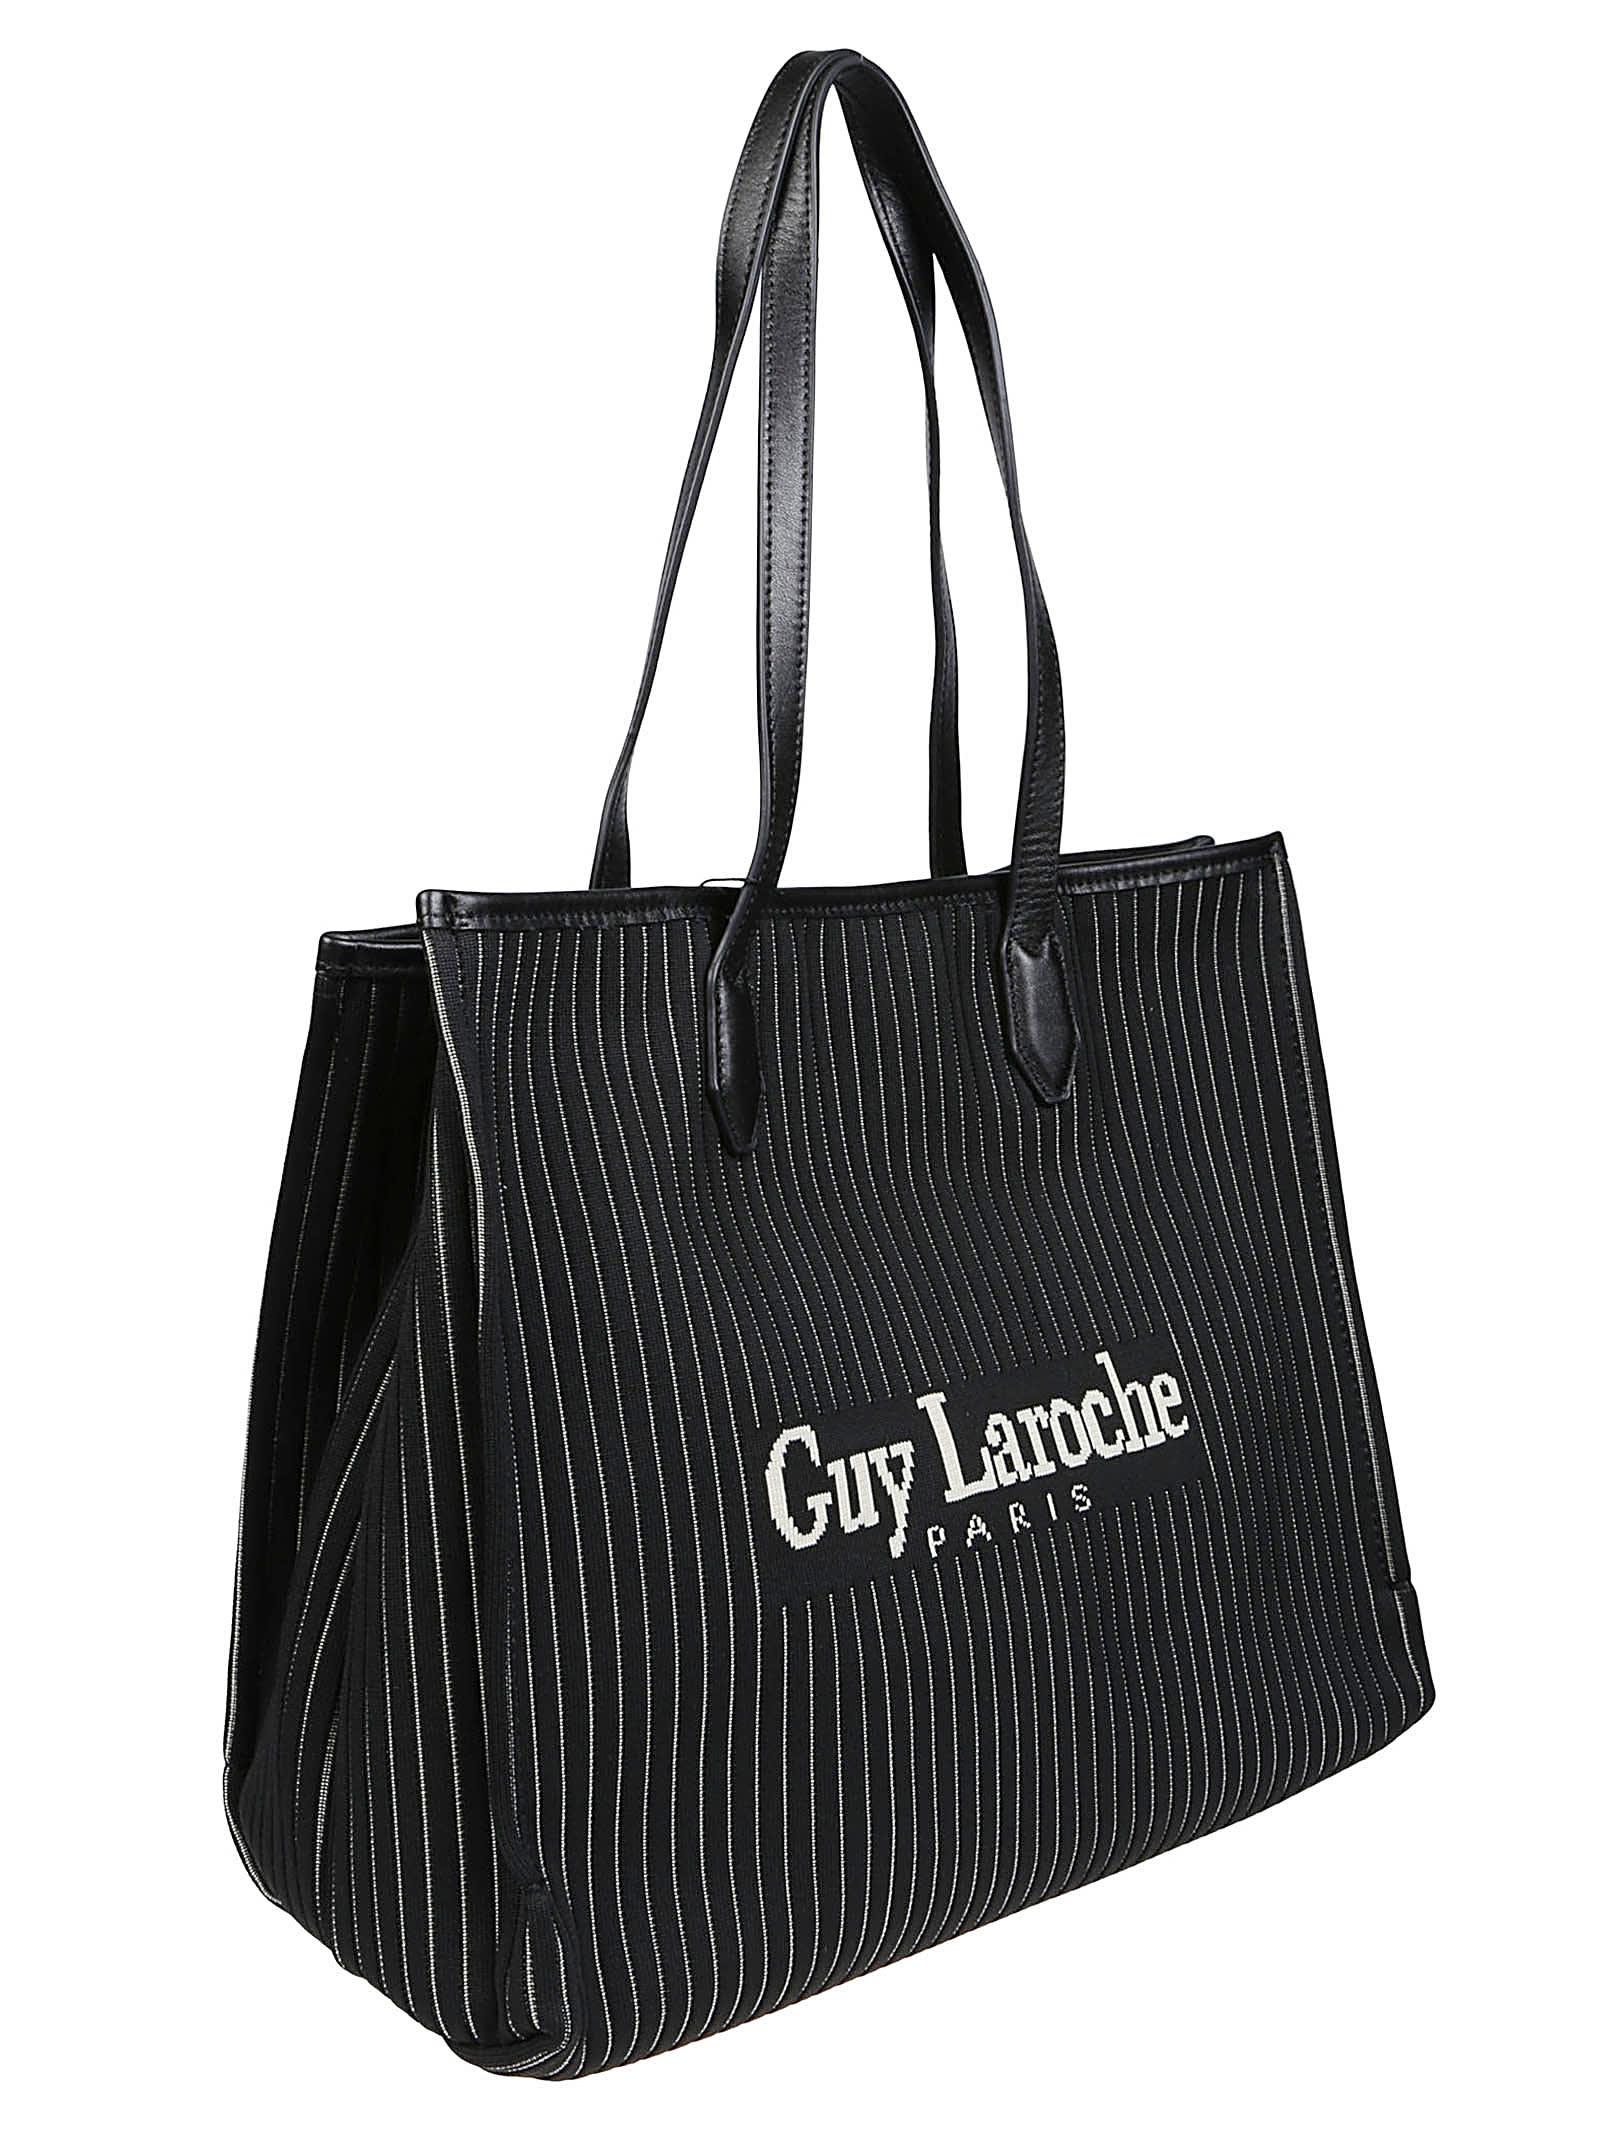 Guy Laroche Small Tote Bag in Black